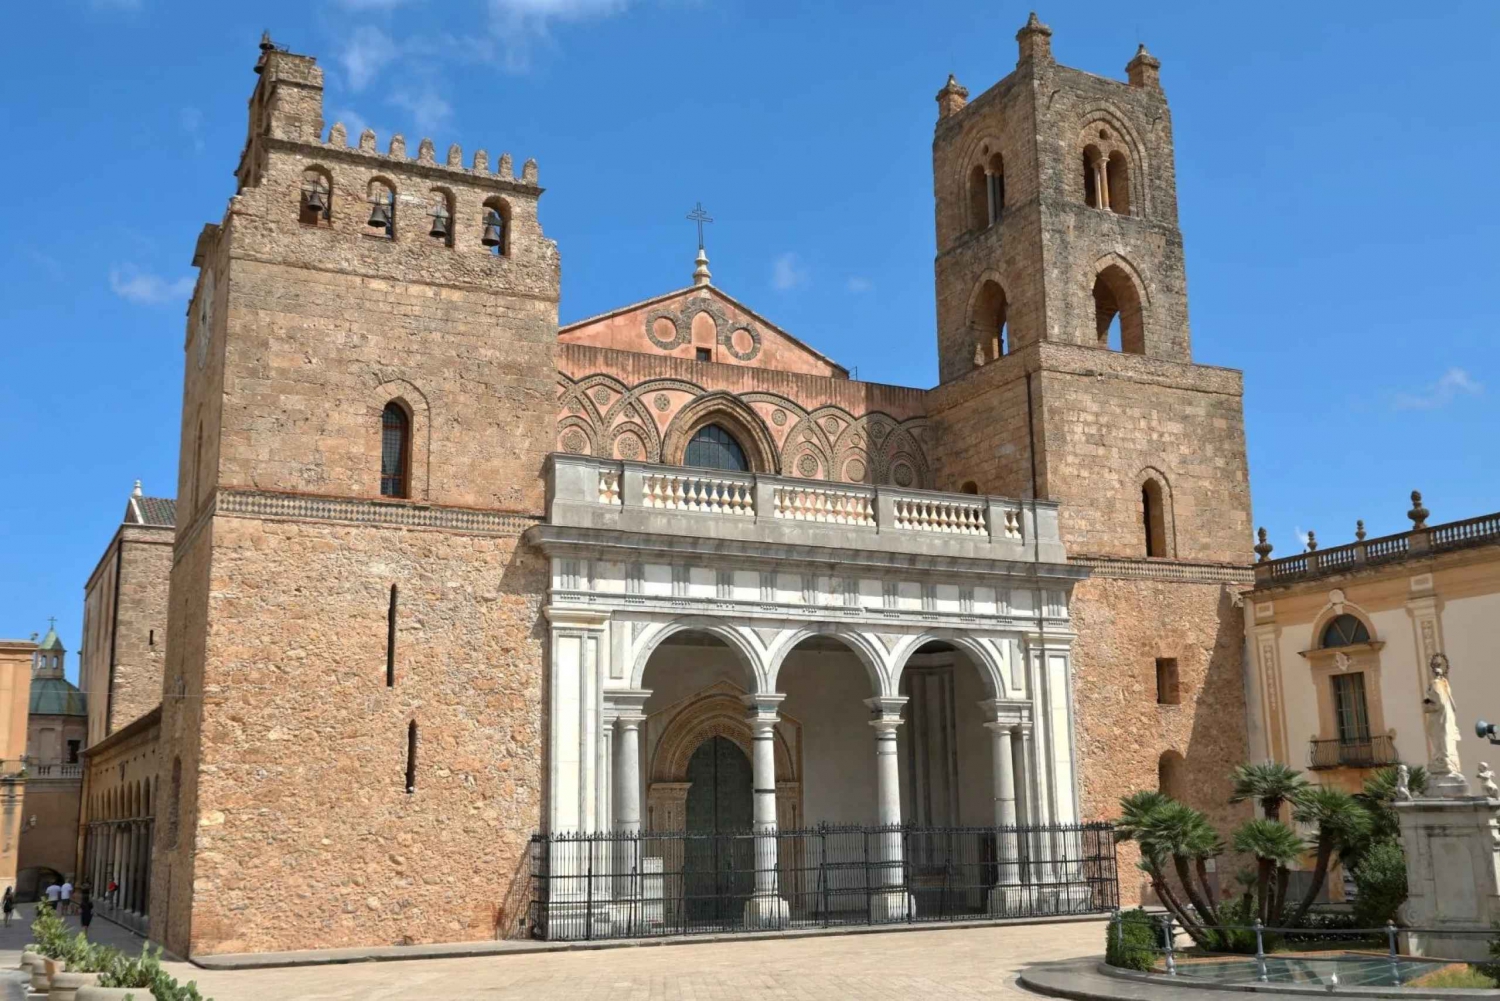 Palermo: Monreale, Catacumbas e S. Giovanni degli Eremiti